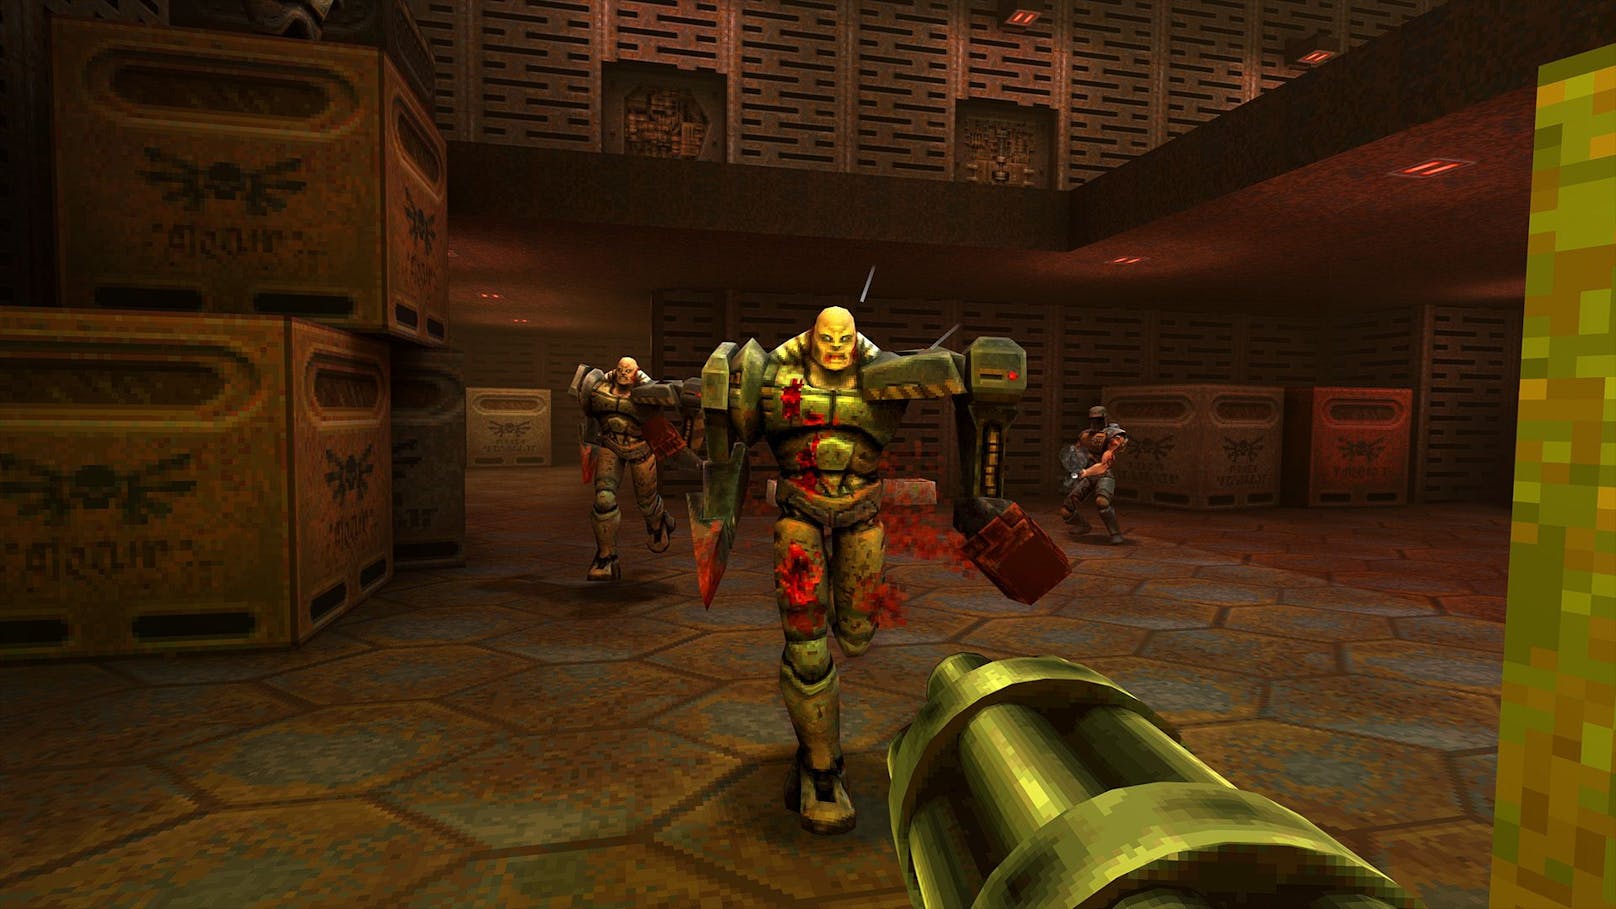 "Quake II" im Test – Remaster für den Kult-Shooter